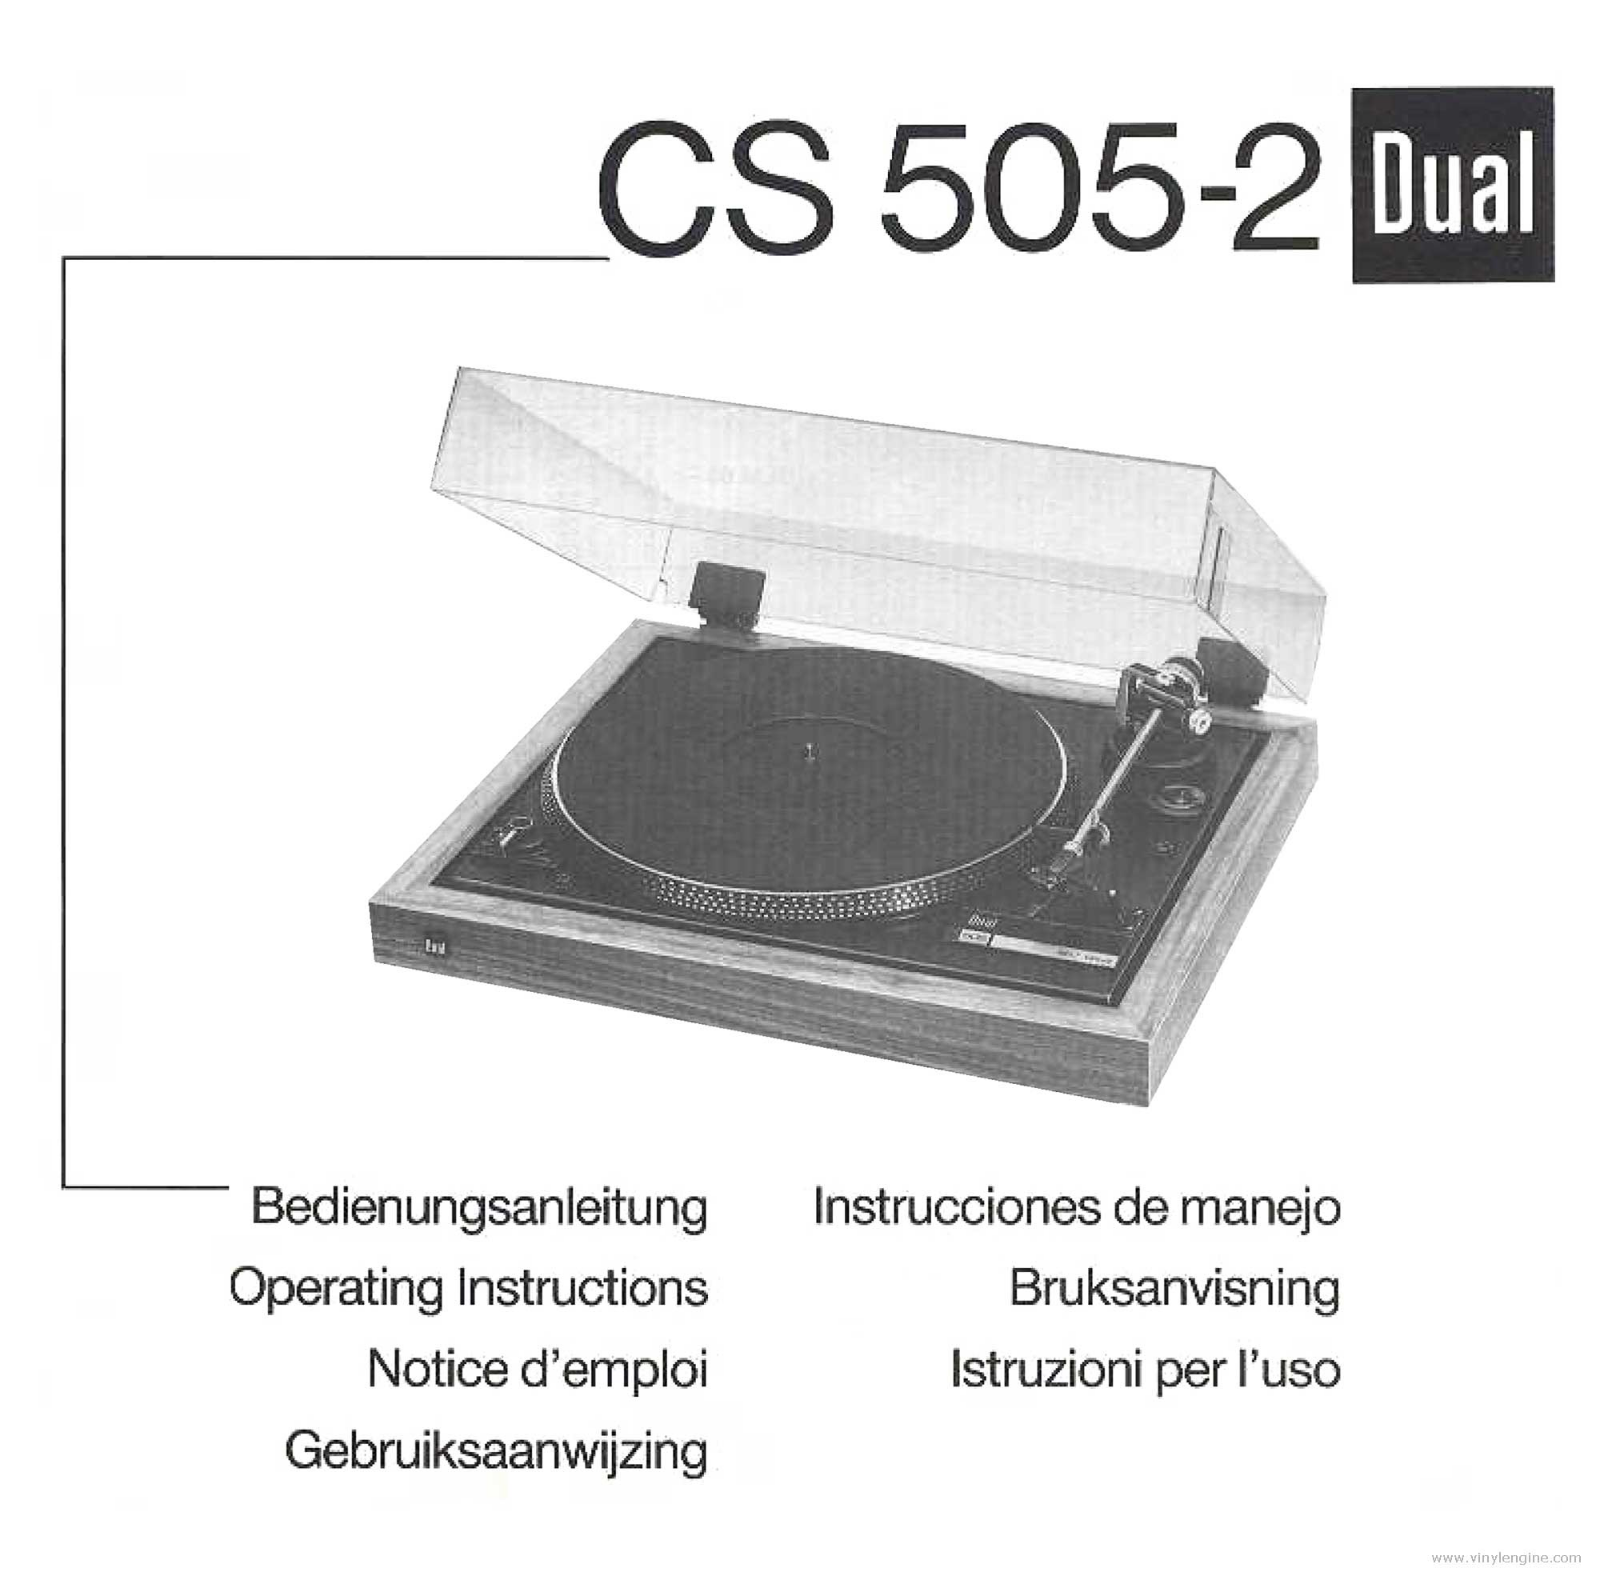 DUAL 505-2 User Manual